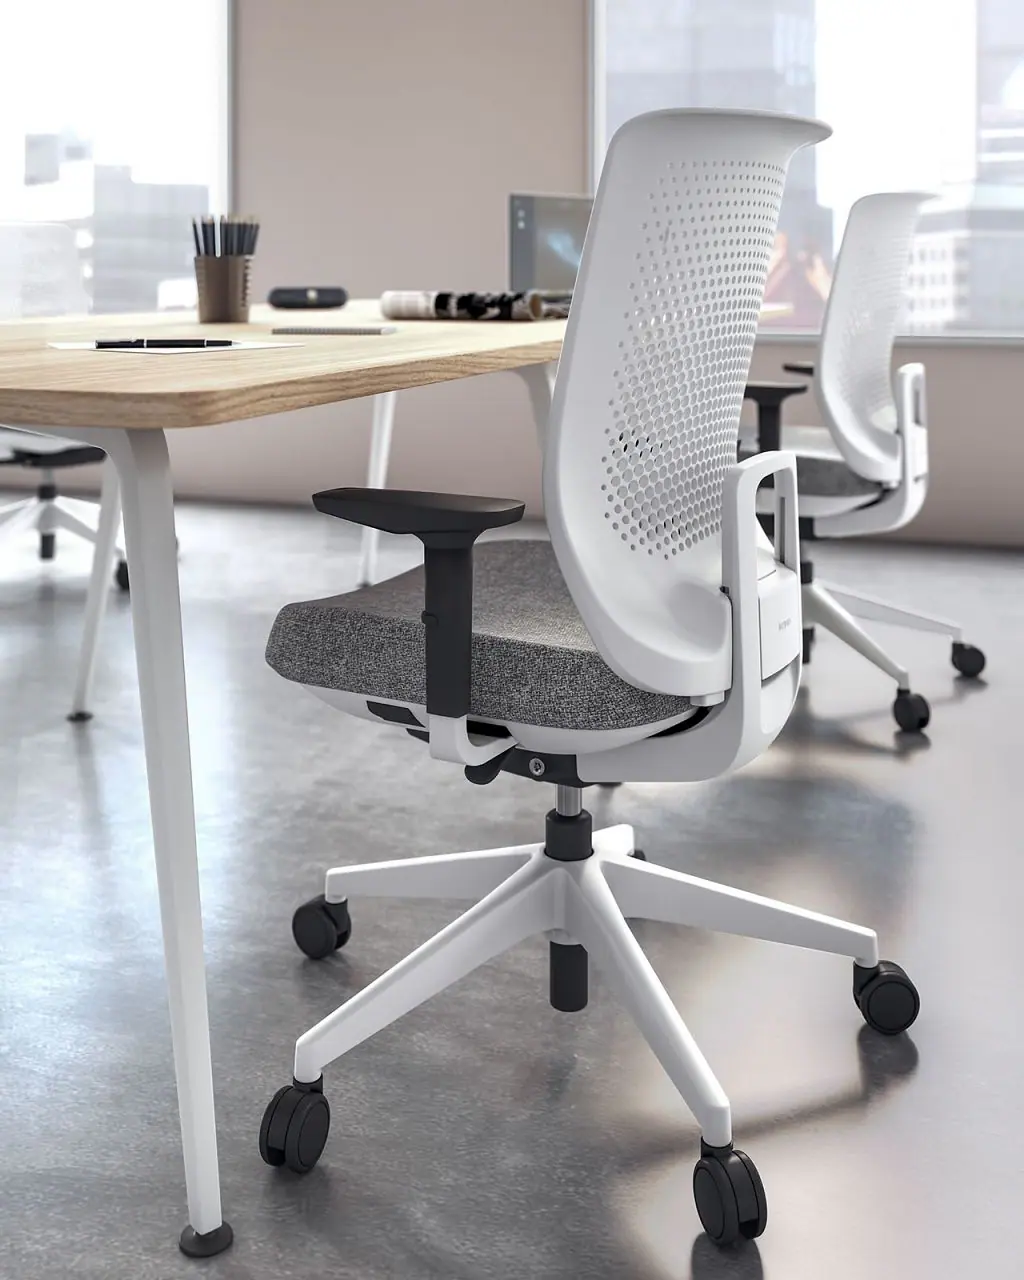 45762-37448-trim-office-chair